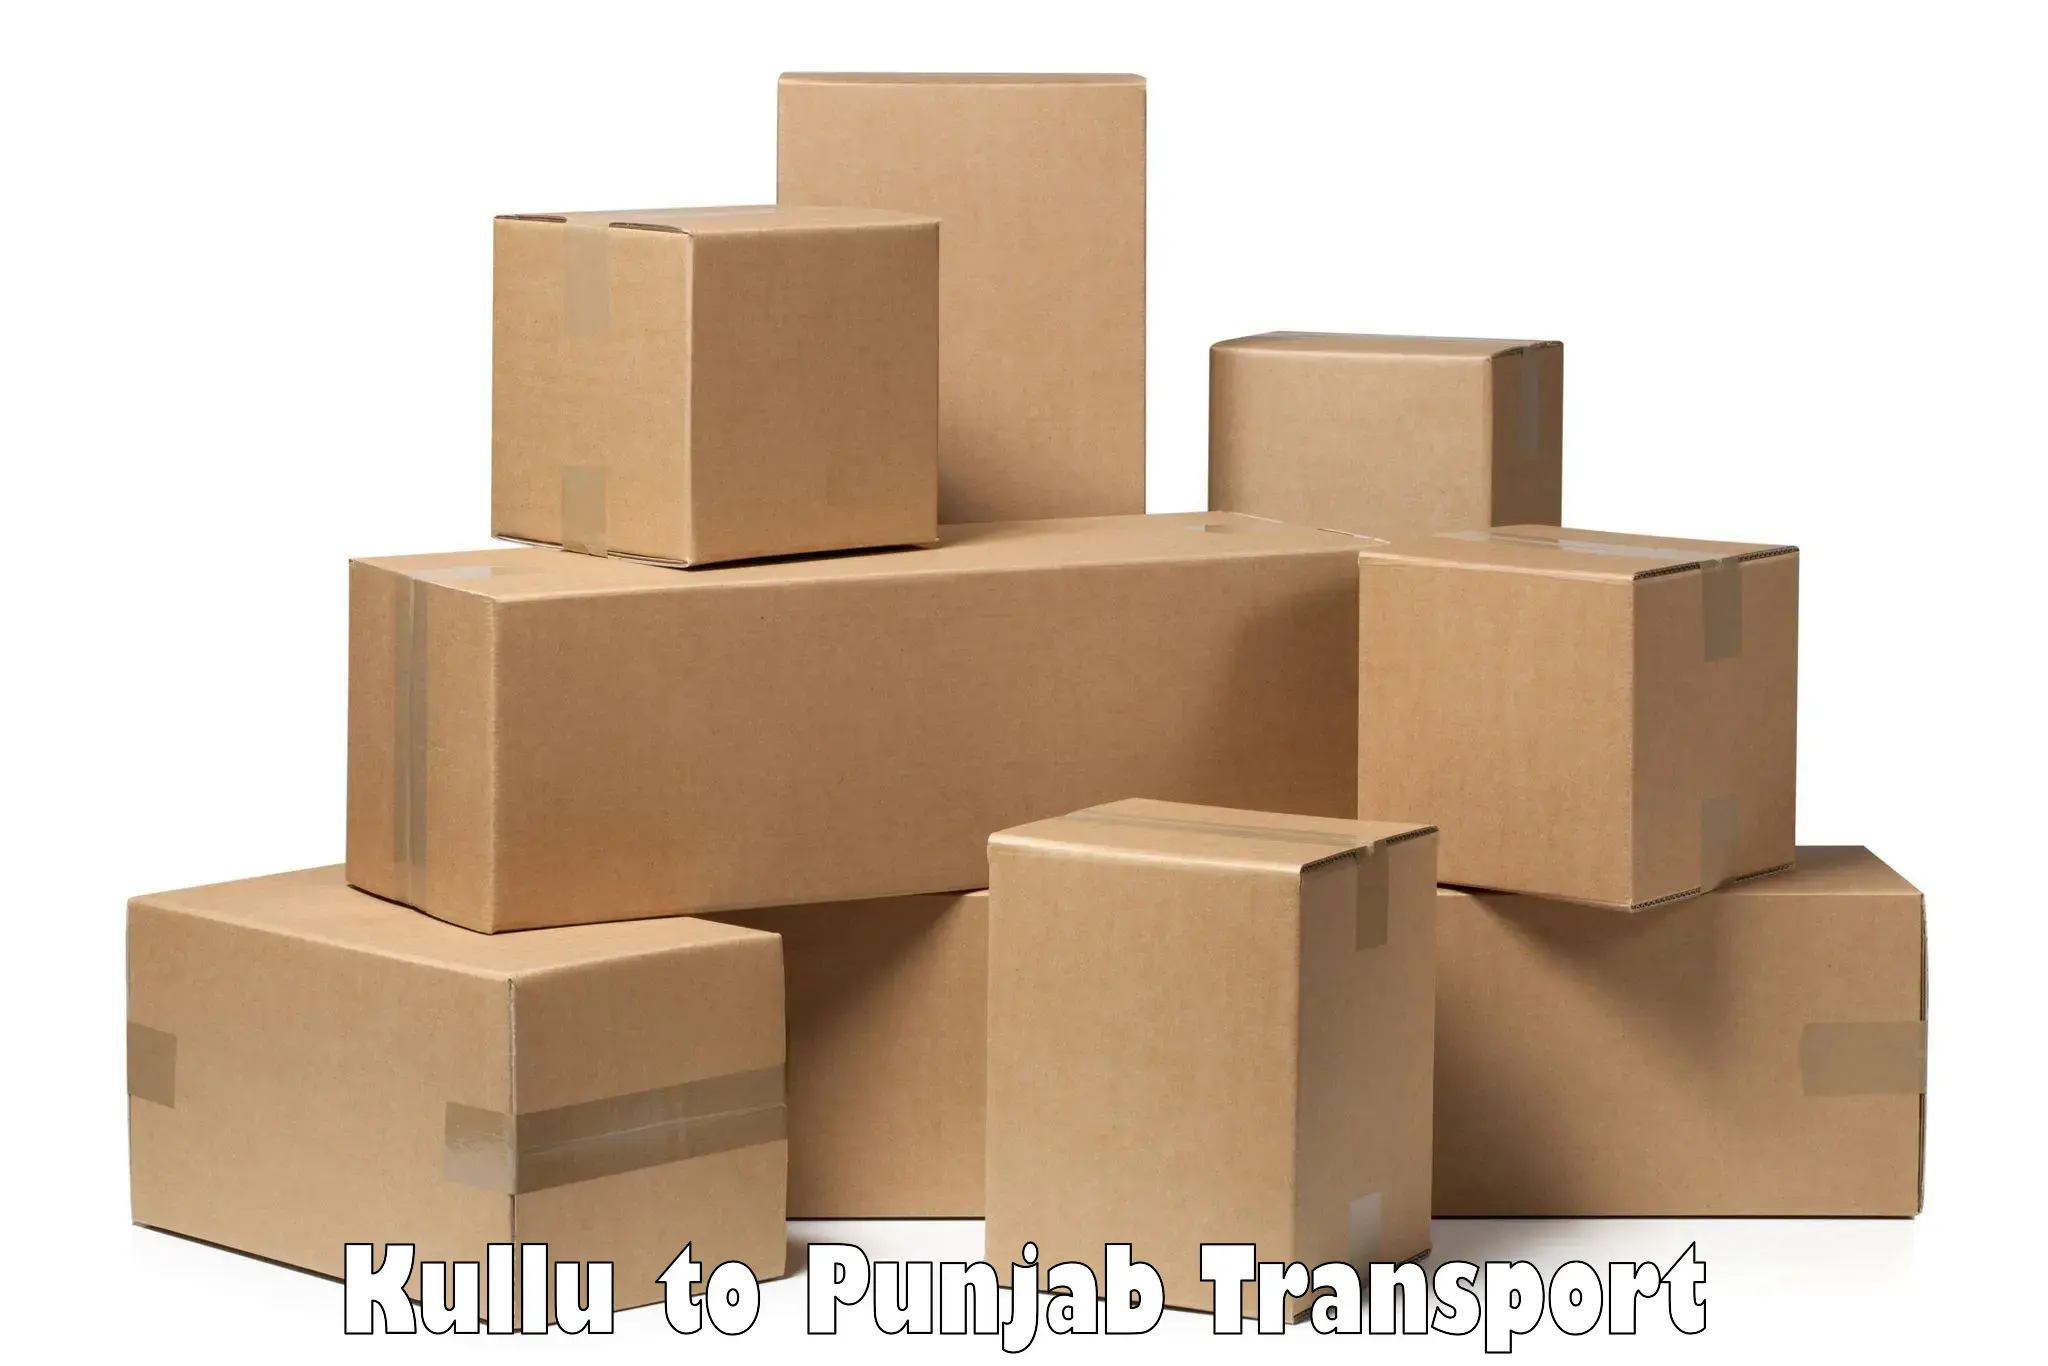 Daily transport service Kullu to Jalalabad